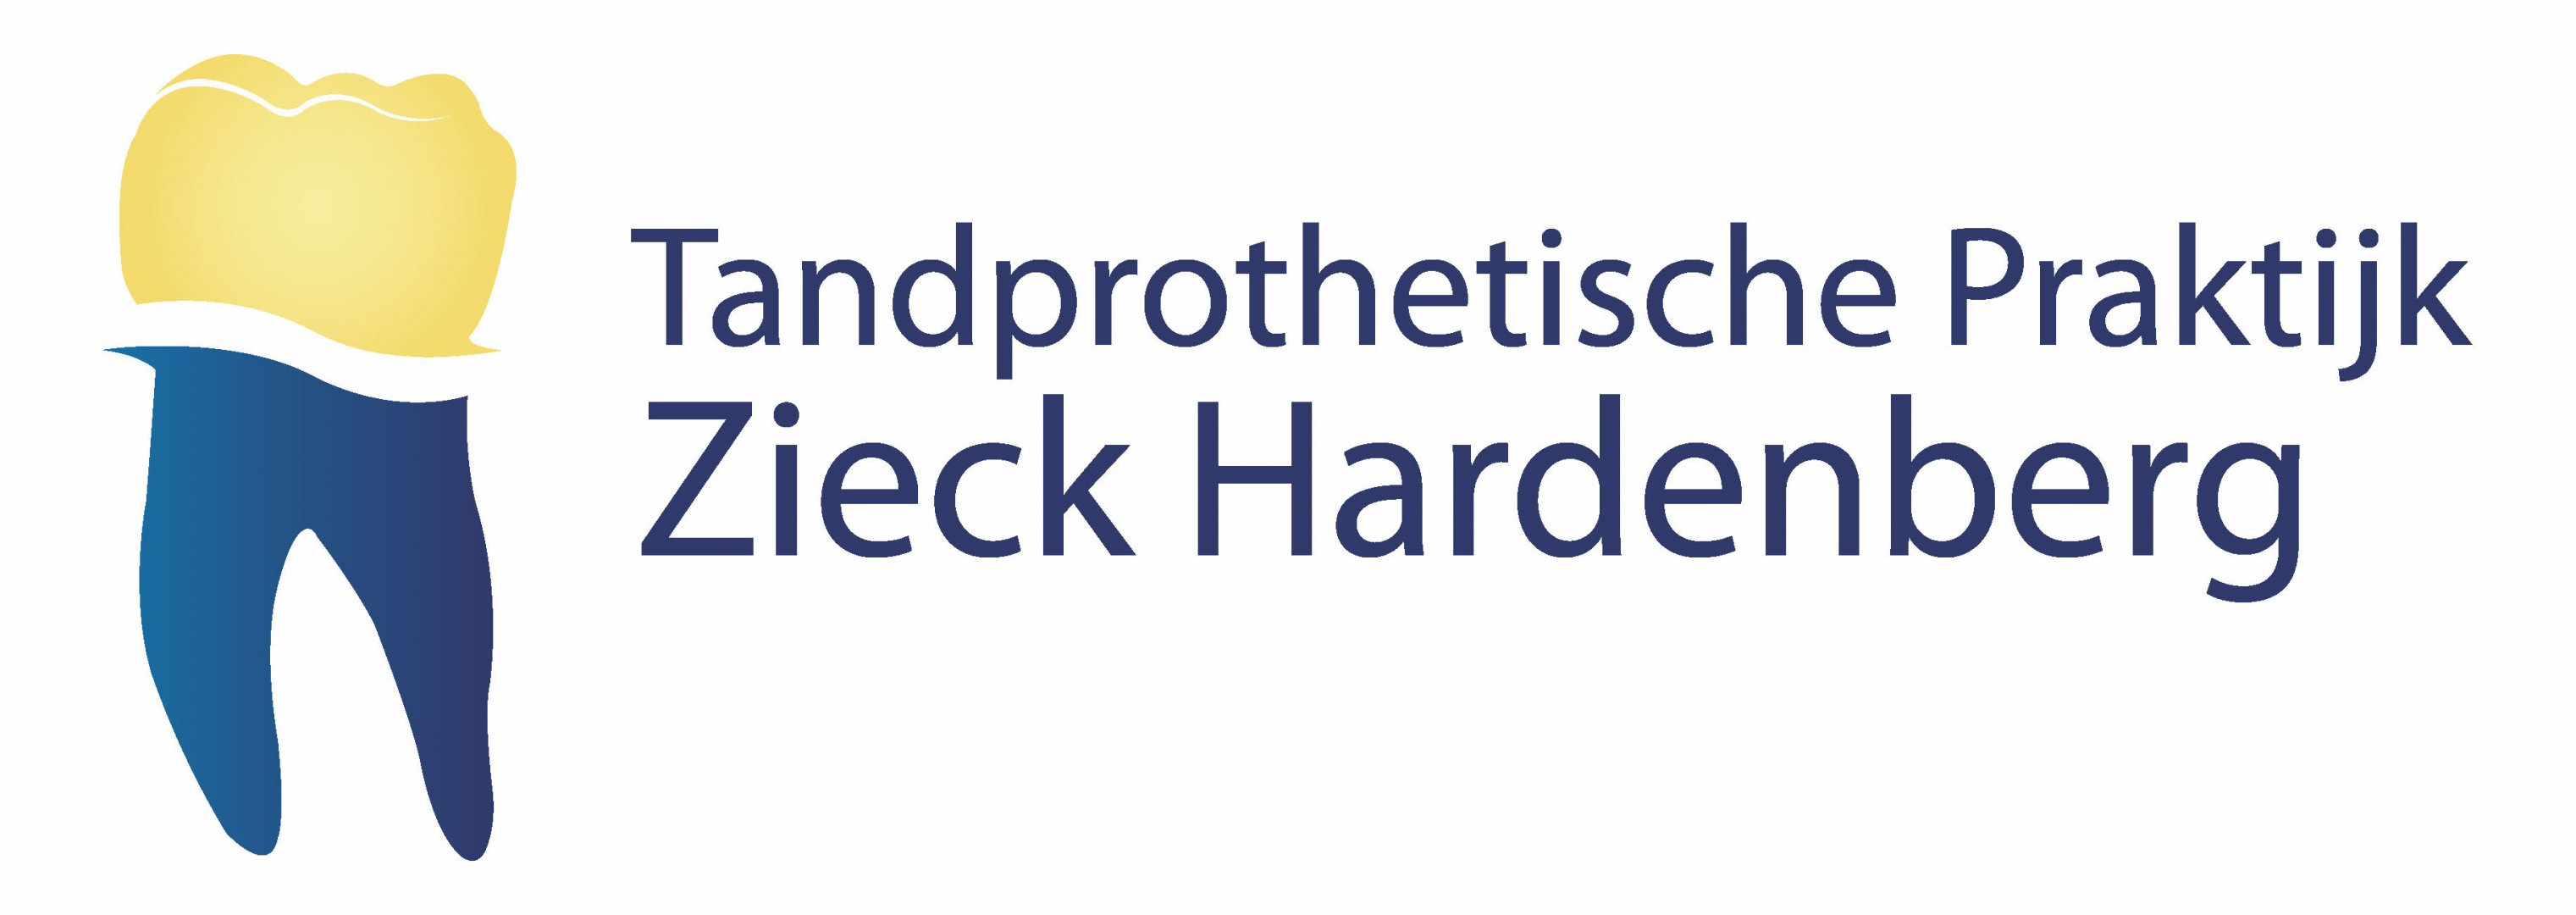 Tandprothetische Praktijk Zieck Hardenberg